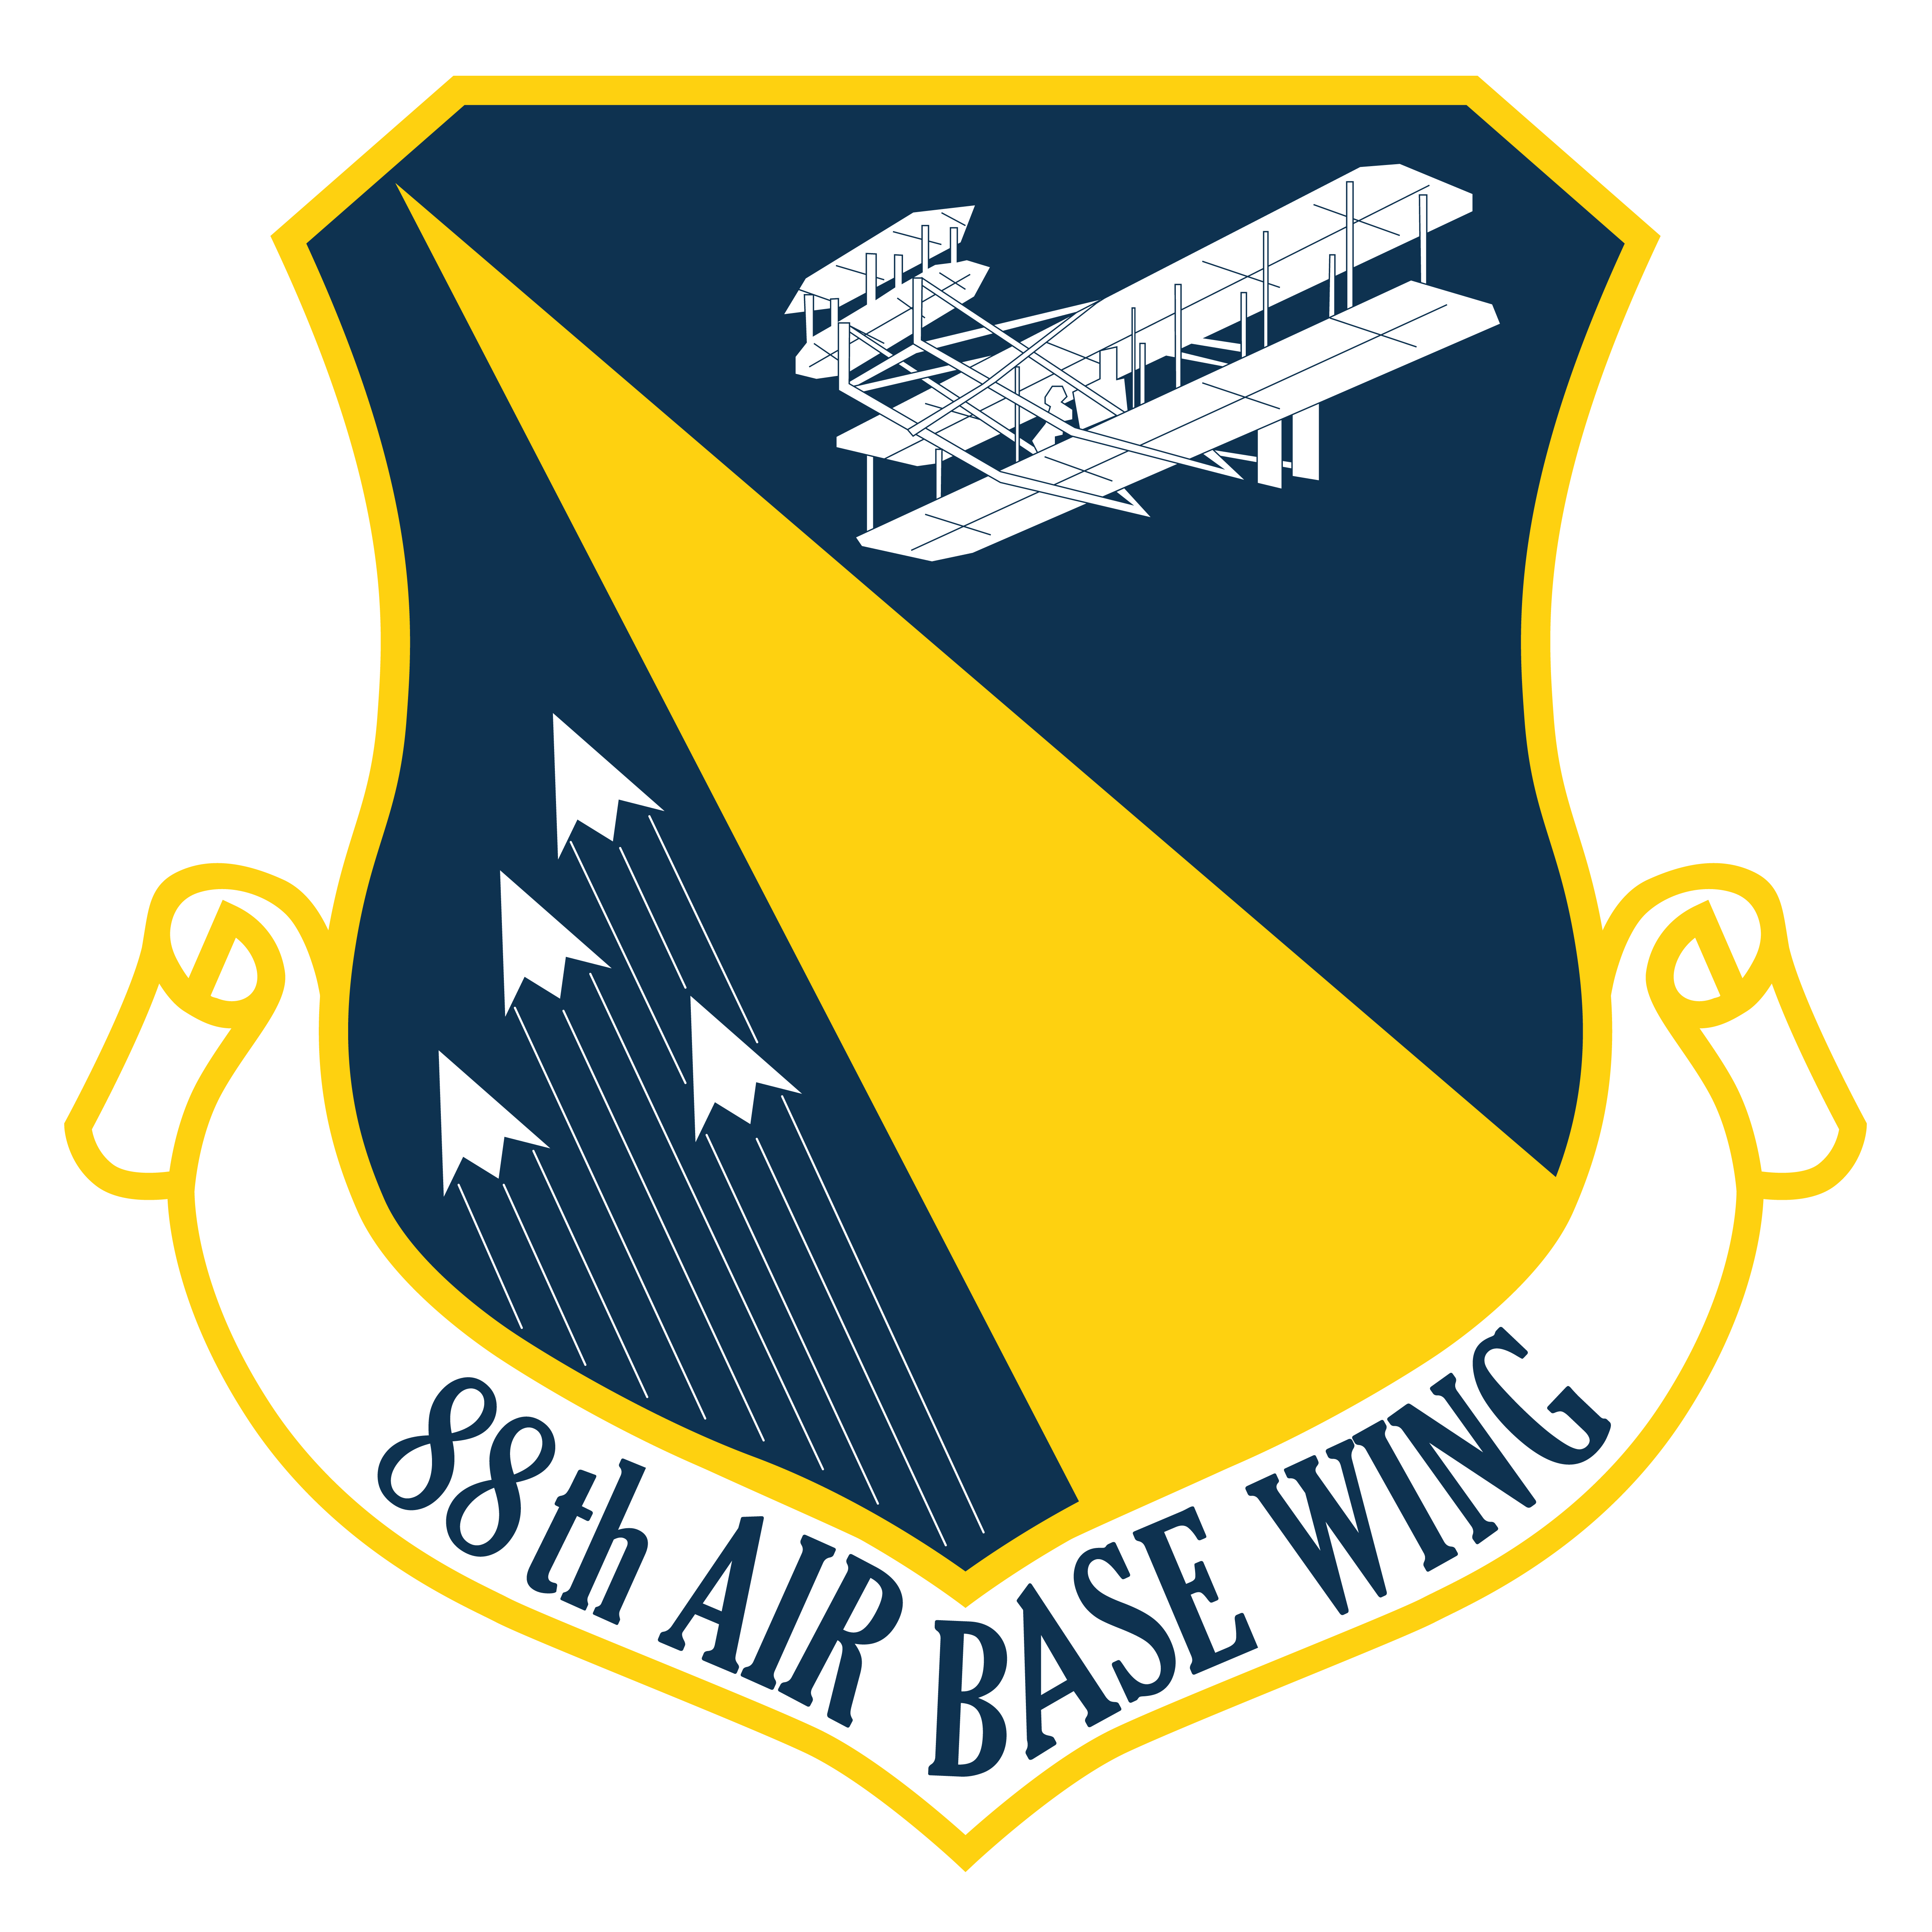 88th Air Base Wing logo